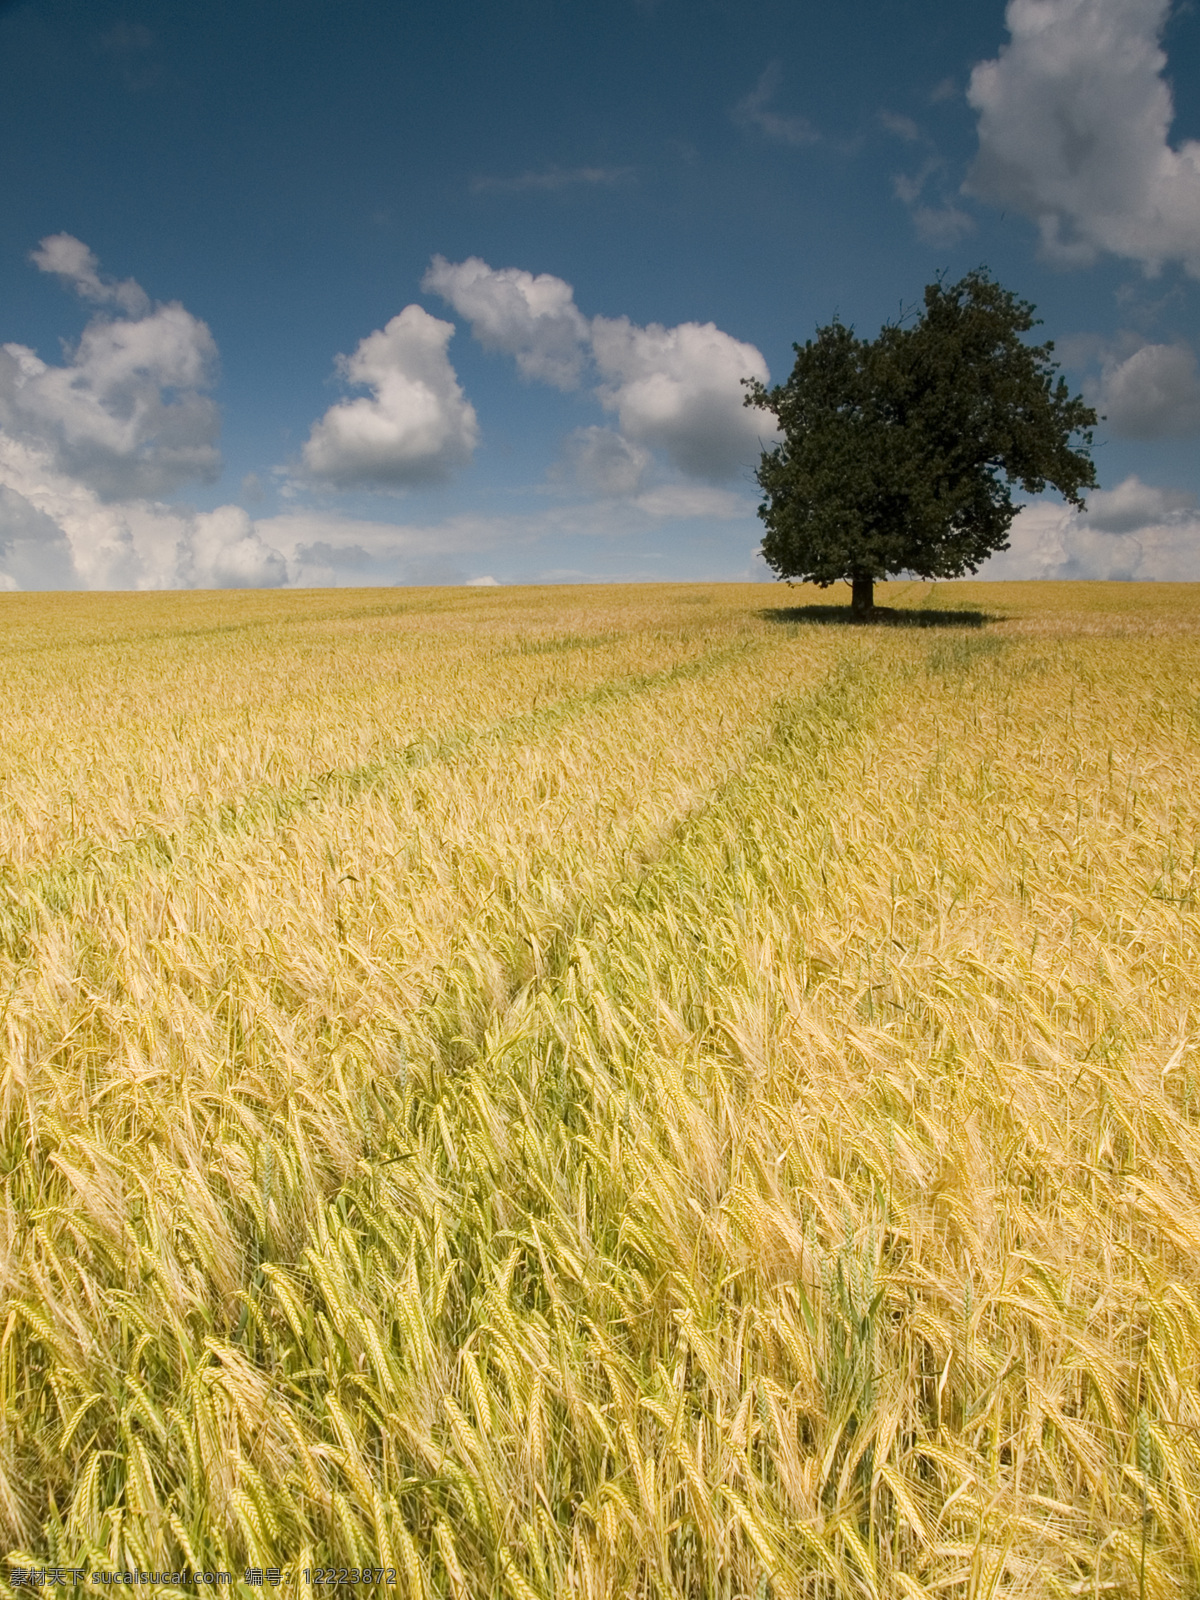 成熟的麦地 谷物 天空 地面 树 农业 谷类植物 小麦 夏季 黄色 农场 云景观 成熟 作物 耕地 五彩 有机 食品 旅游摄影 自然风景